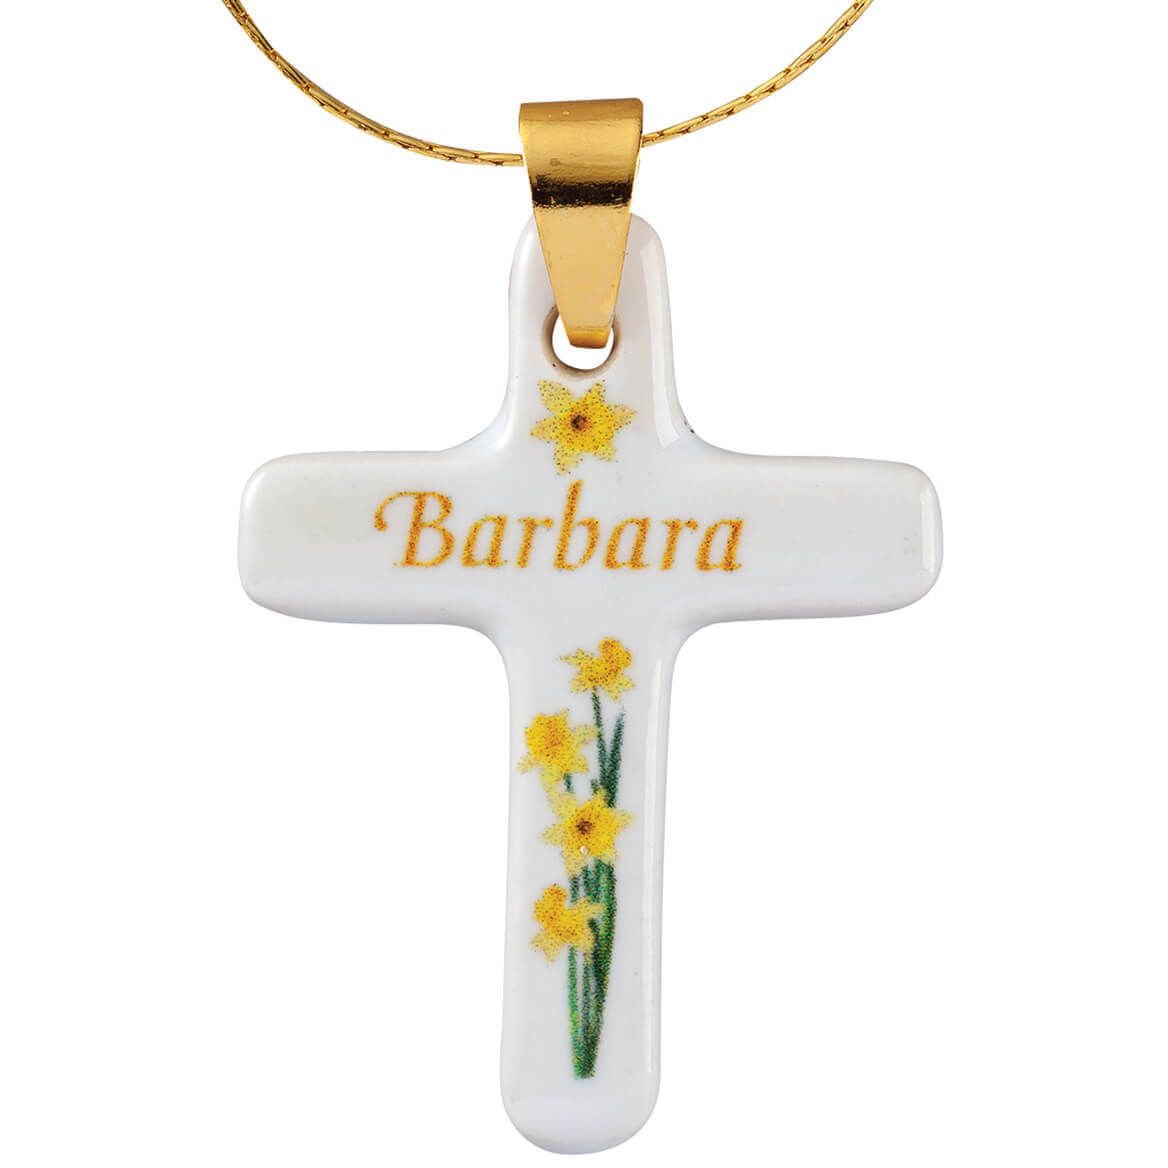 Personalized Porcelain Cross Bouquet Pendant + '-' + 375623